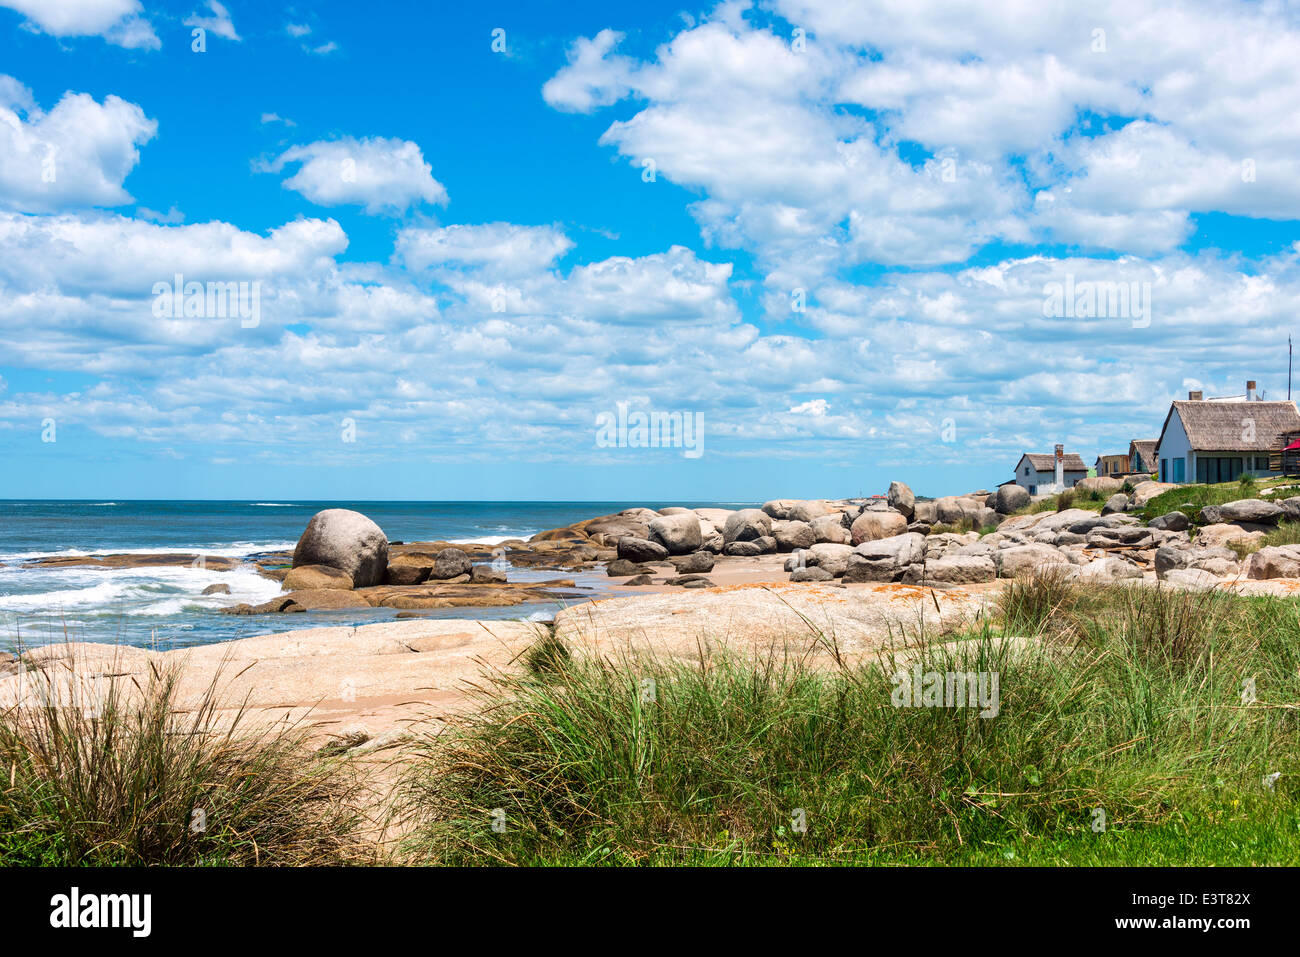 La plage de Punta del Diablo, lieu touristique très populaire en Uruguay Banque D'Images